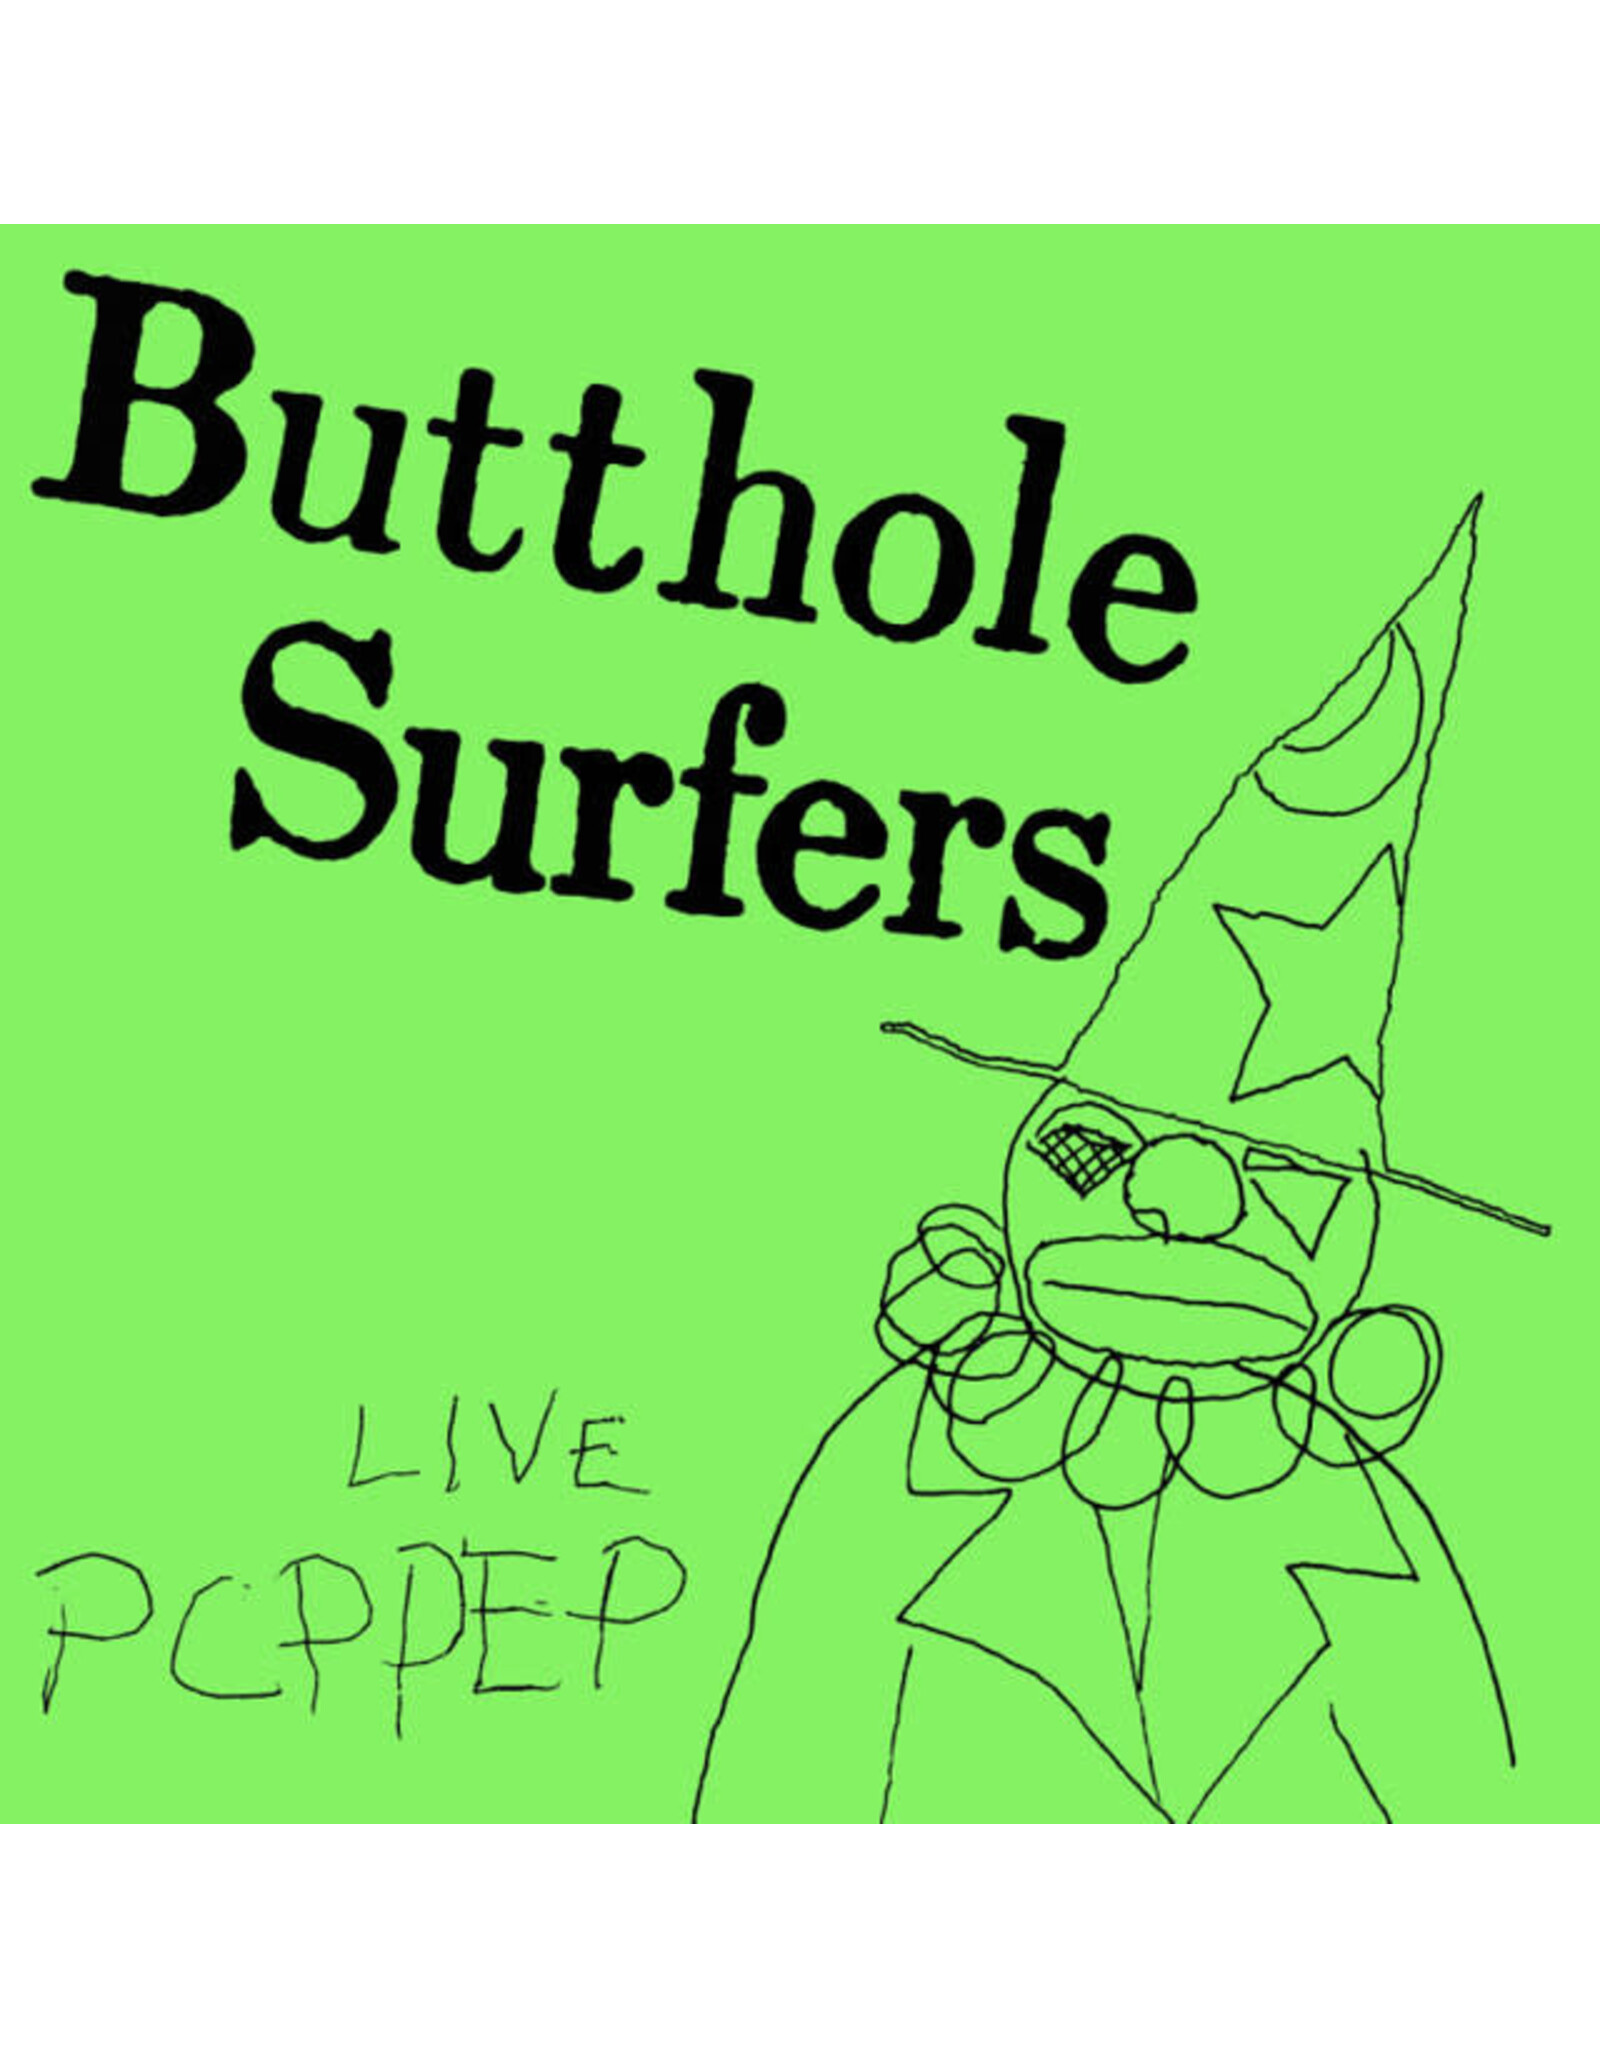 Matador Butthole Surfers: PCPPEP LP